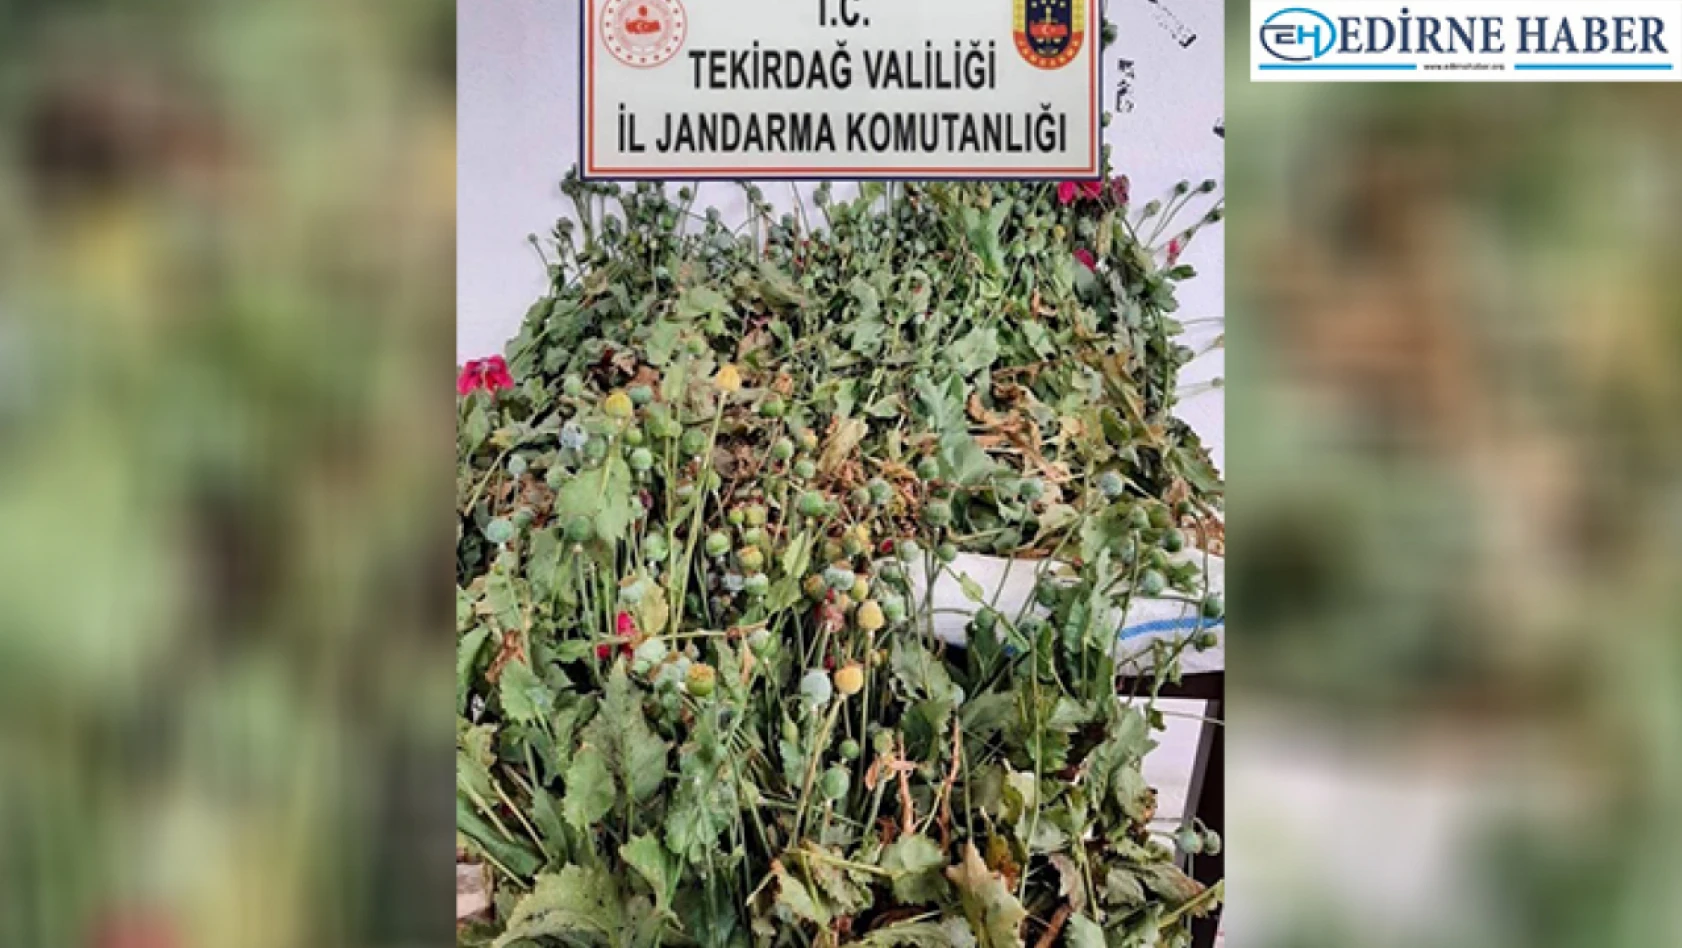 Tekirdağ'da evlerindeki saksılarda haşhaş bitkisi yetiştiren 2 kişi yakalandı